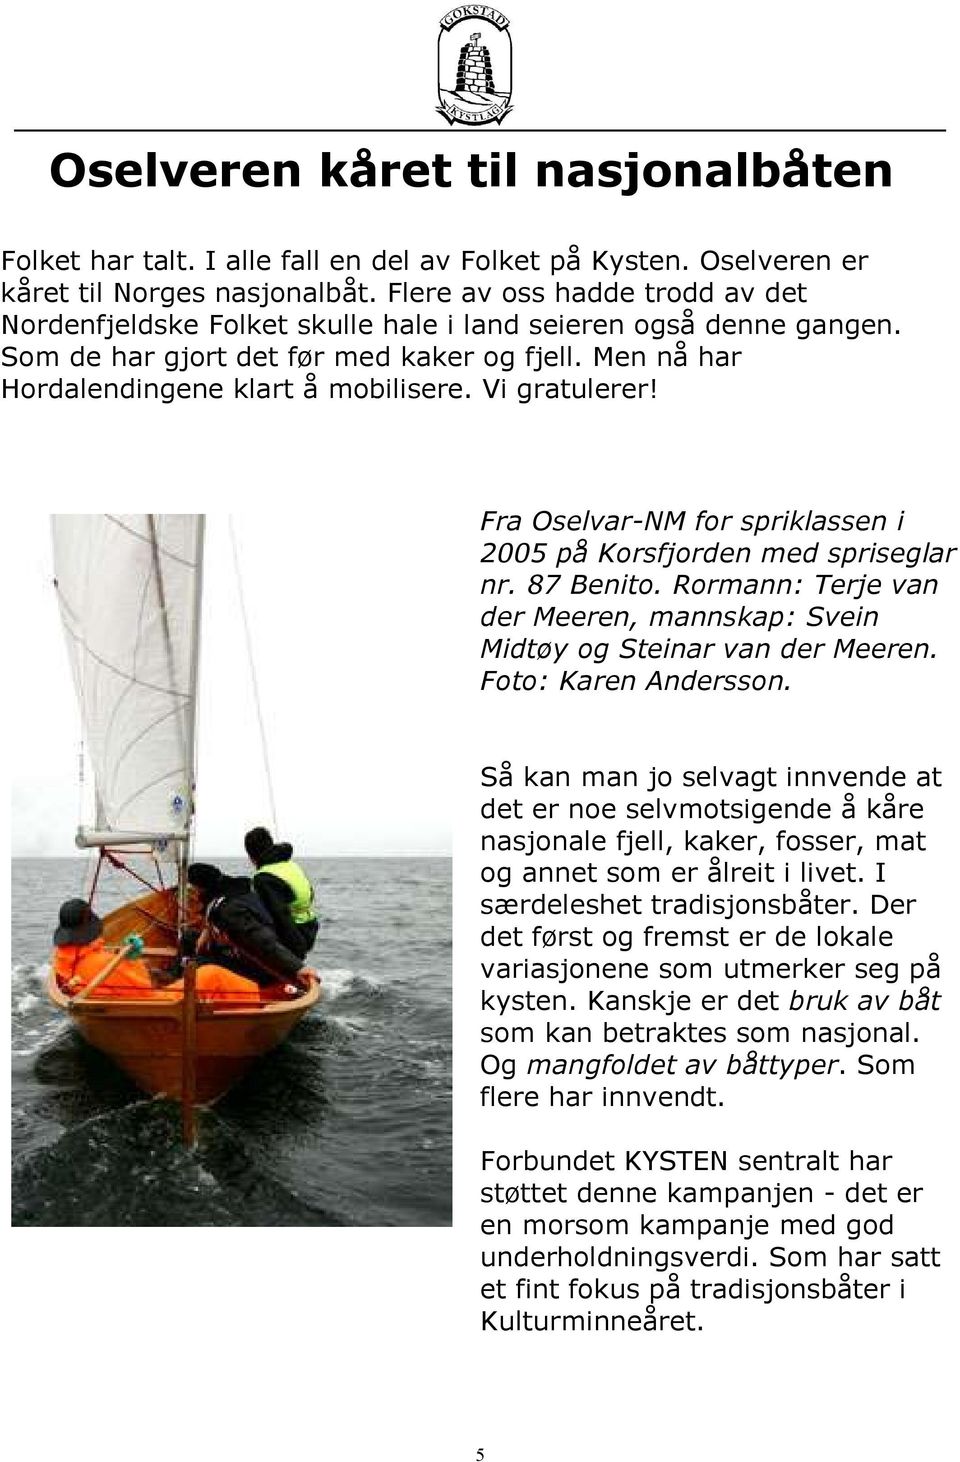 Vi gratulerer! Fra Oselvar-NM for spriklassen i 2005 på Korsfjorden med spriseglar nr. 87 Benito. Rormann: Terje van der Meeren, mannskap: Svein Midtøy og Steinar van der Meeren.